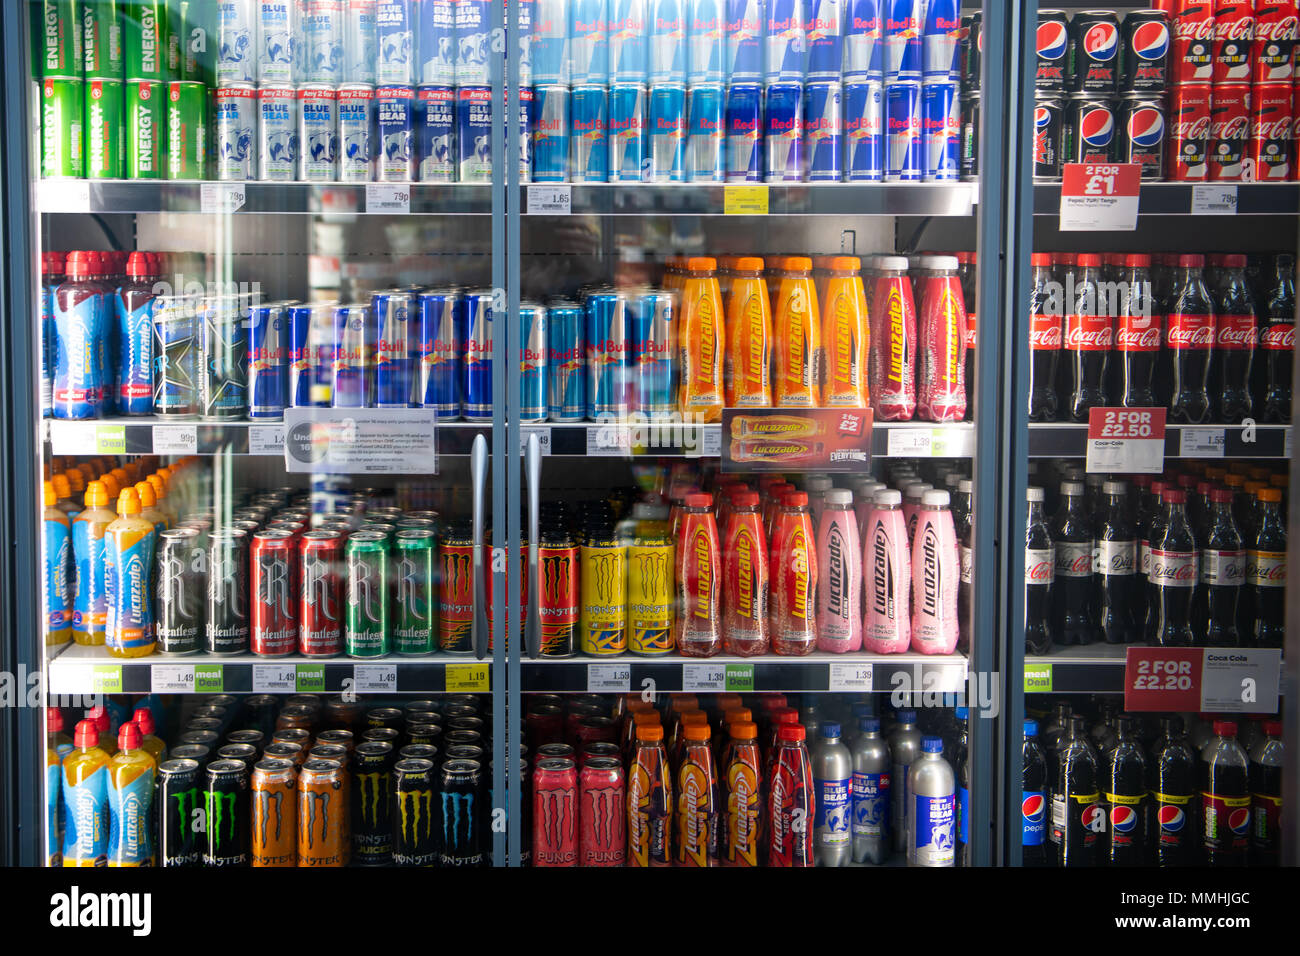 Bibite gassate in vendita in un supermercato frigo chiller. Foto Stock